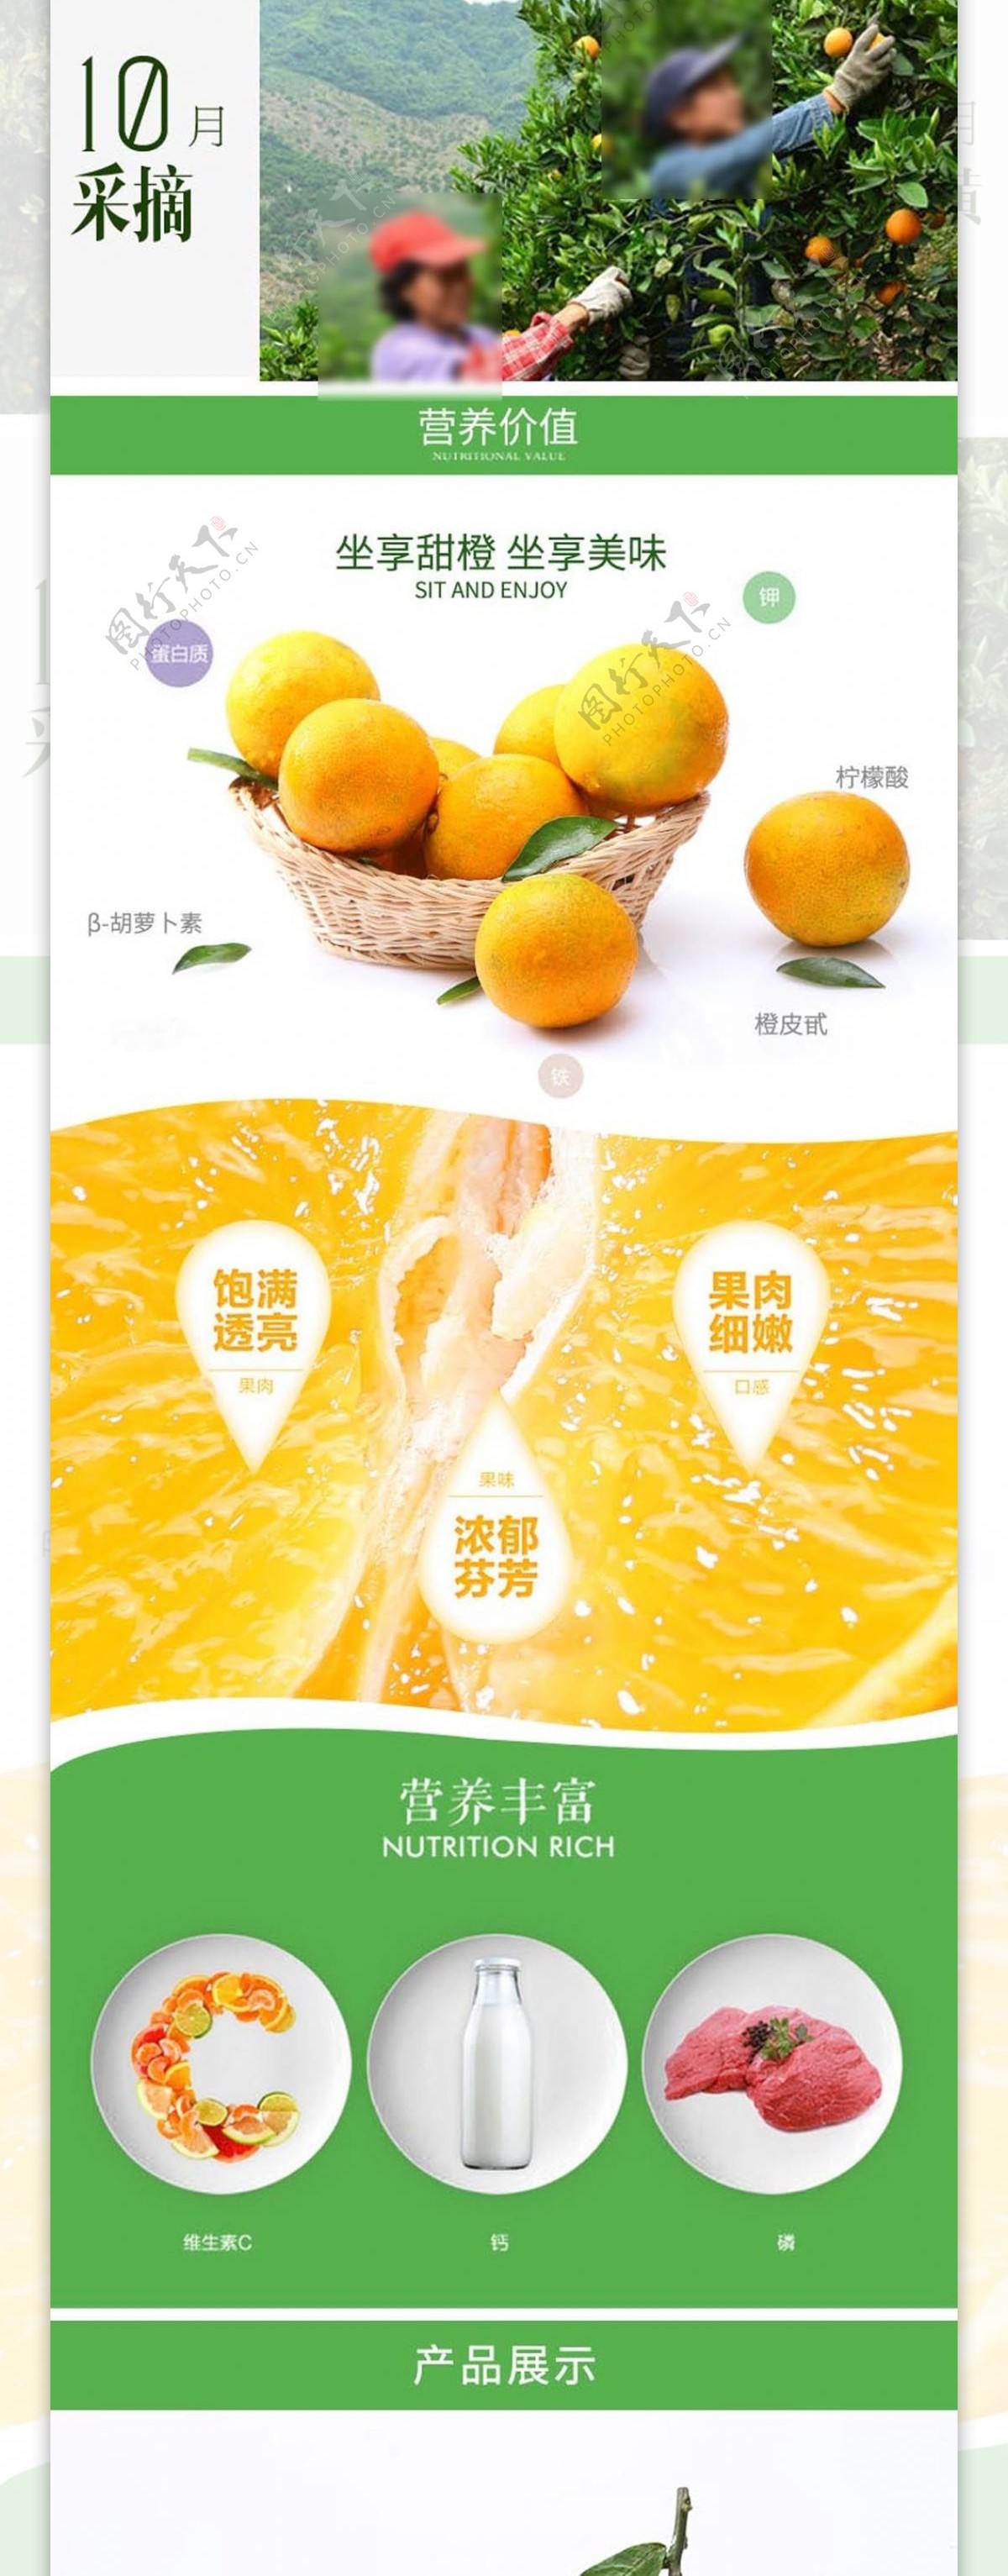 乐山甜橙详情页设计图片